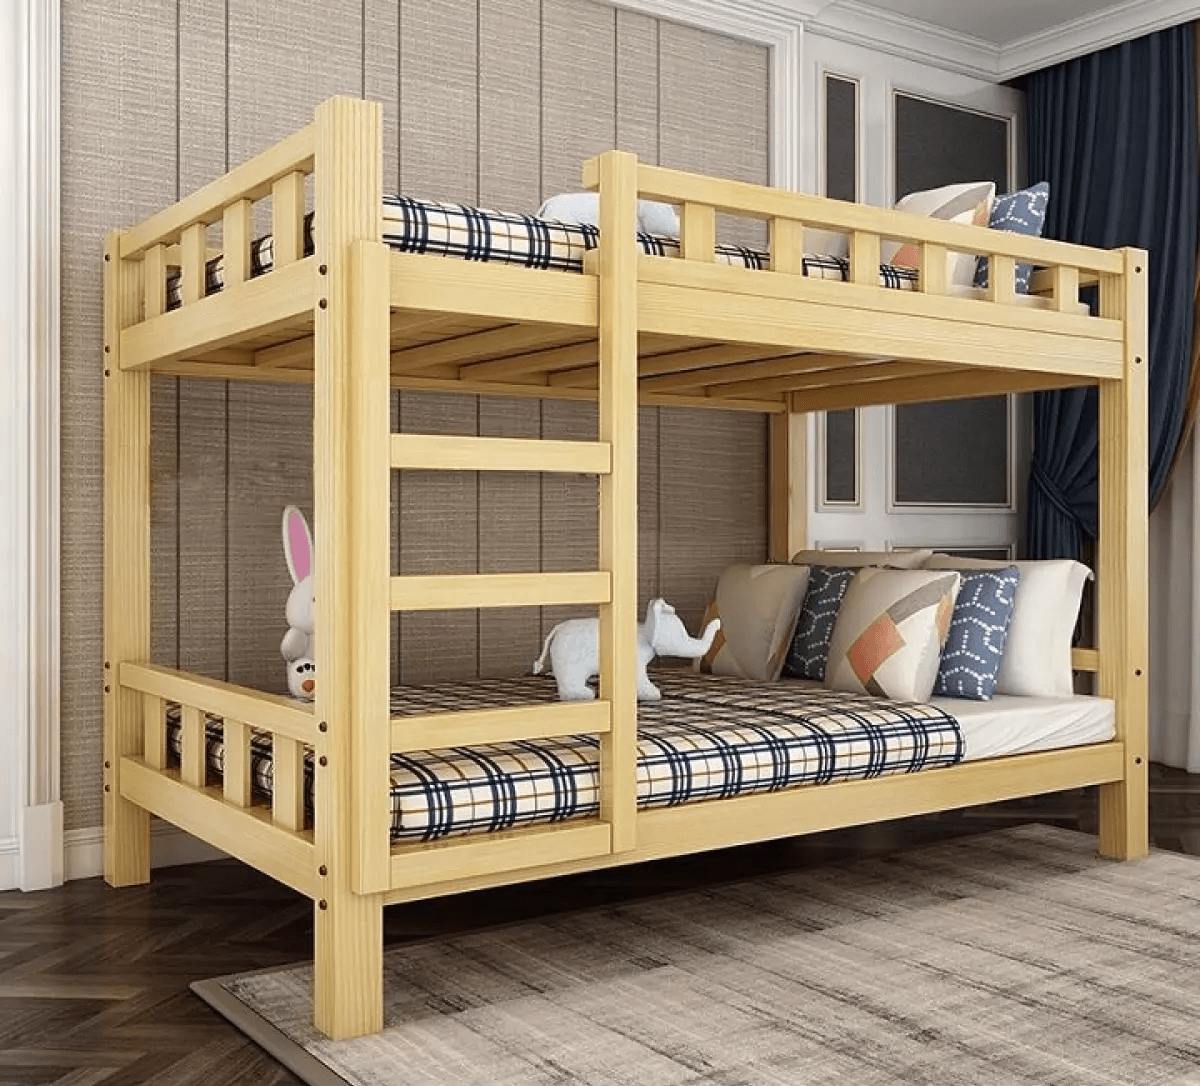 Mẫu thiết kế giường tầng đẹp giá rẻ được làm từ gỗ 4